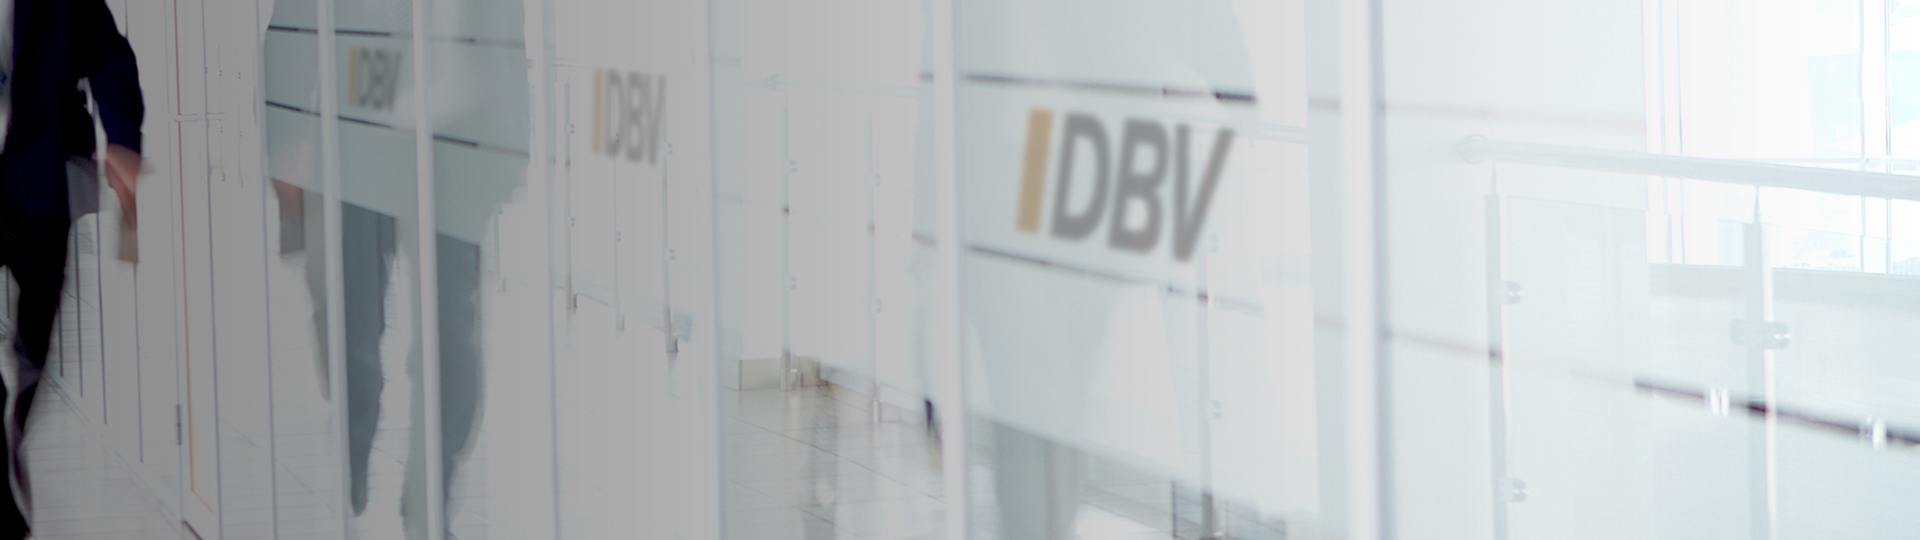 Private Krankenversicherung Köln | DBV Köln Schneppenheim GmbH 